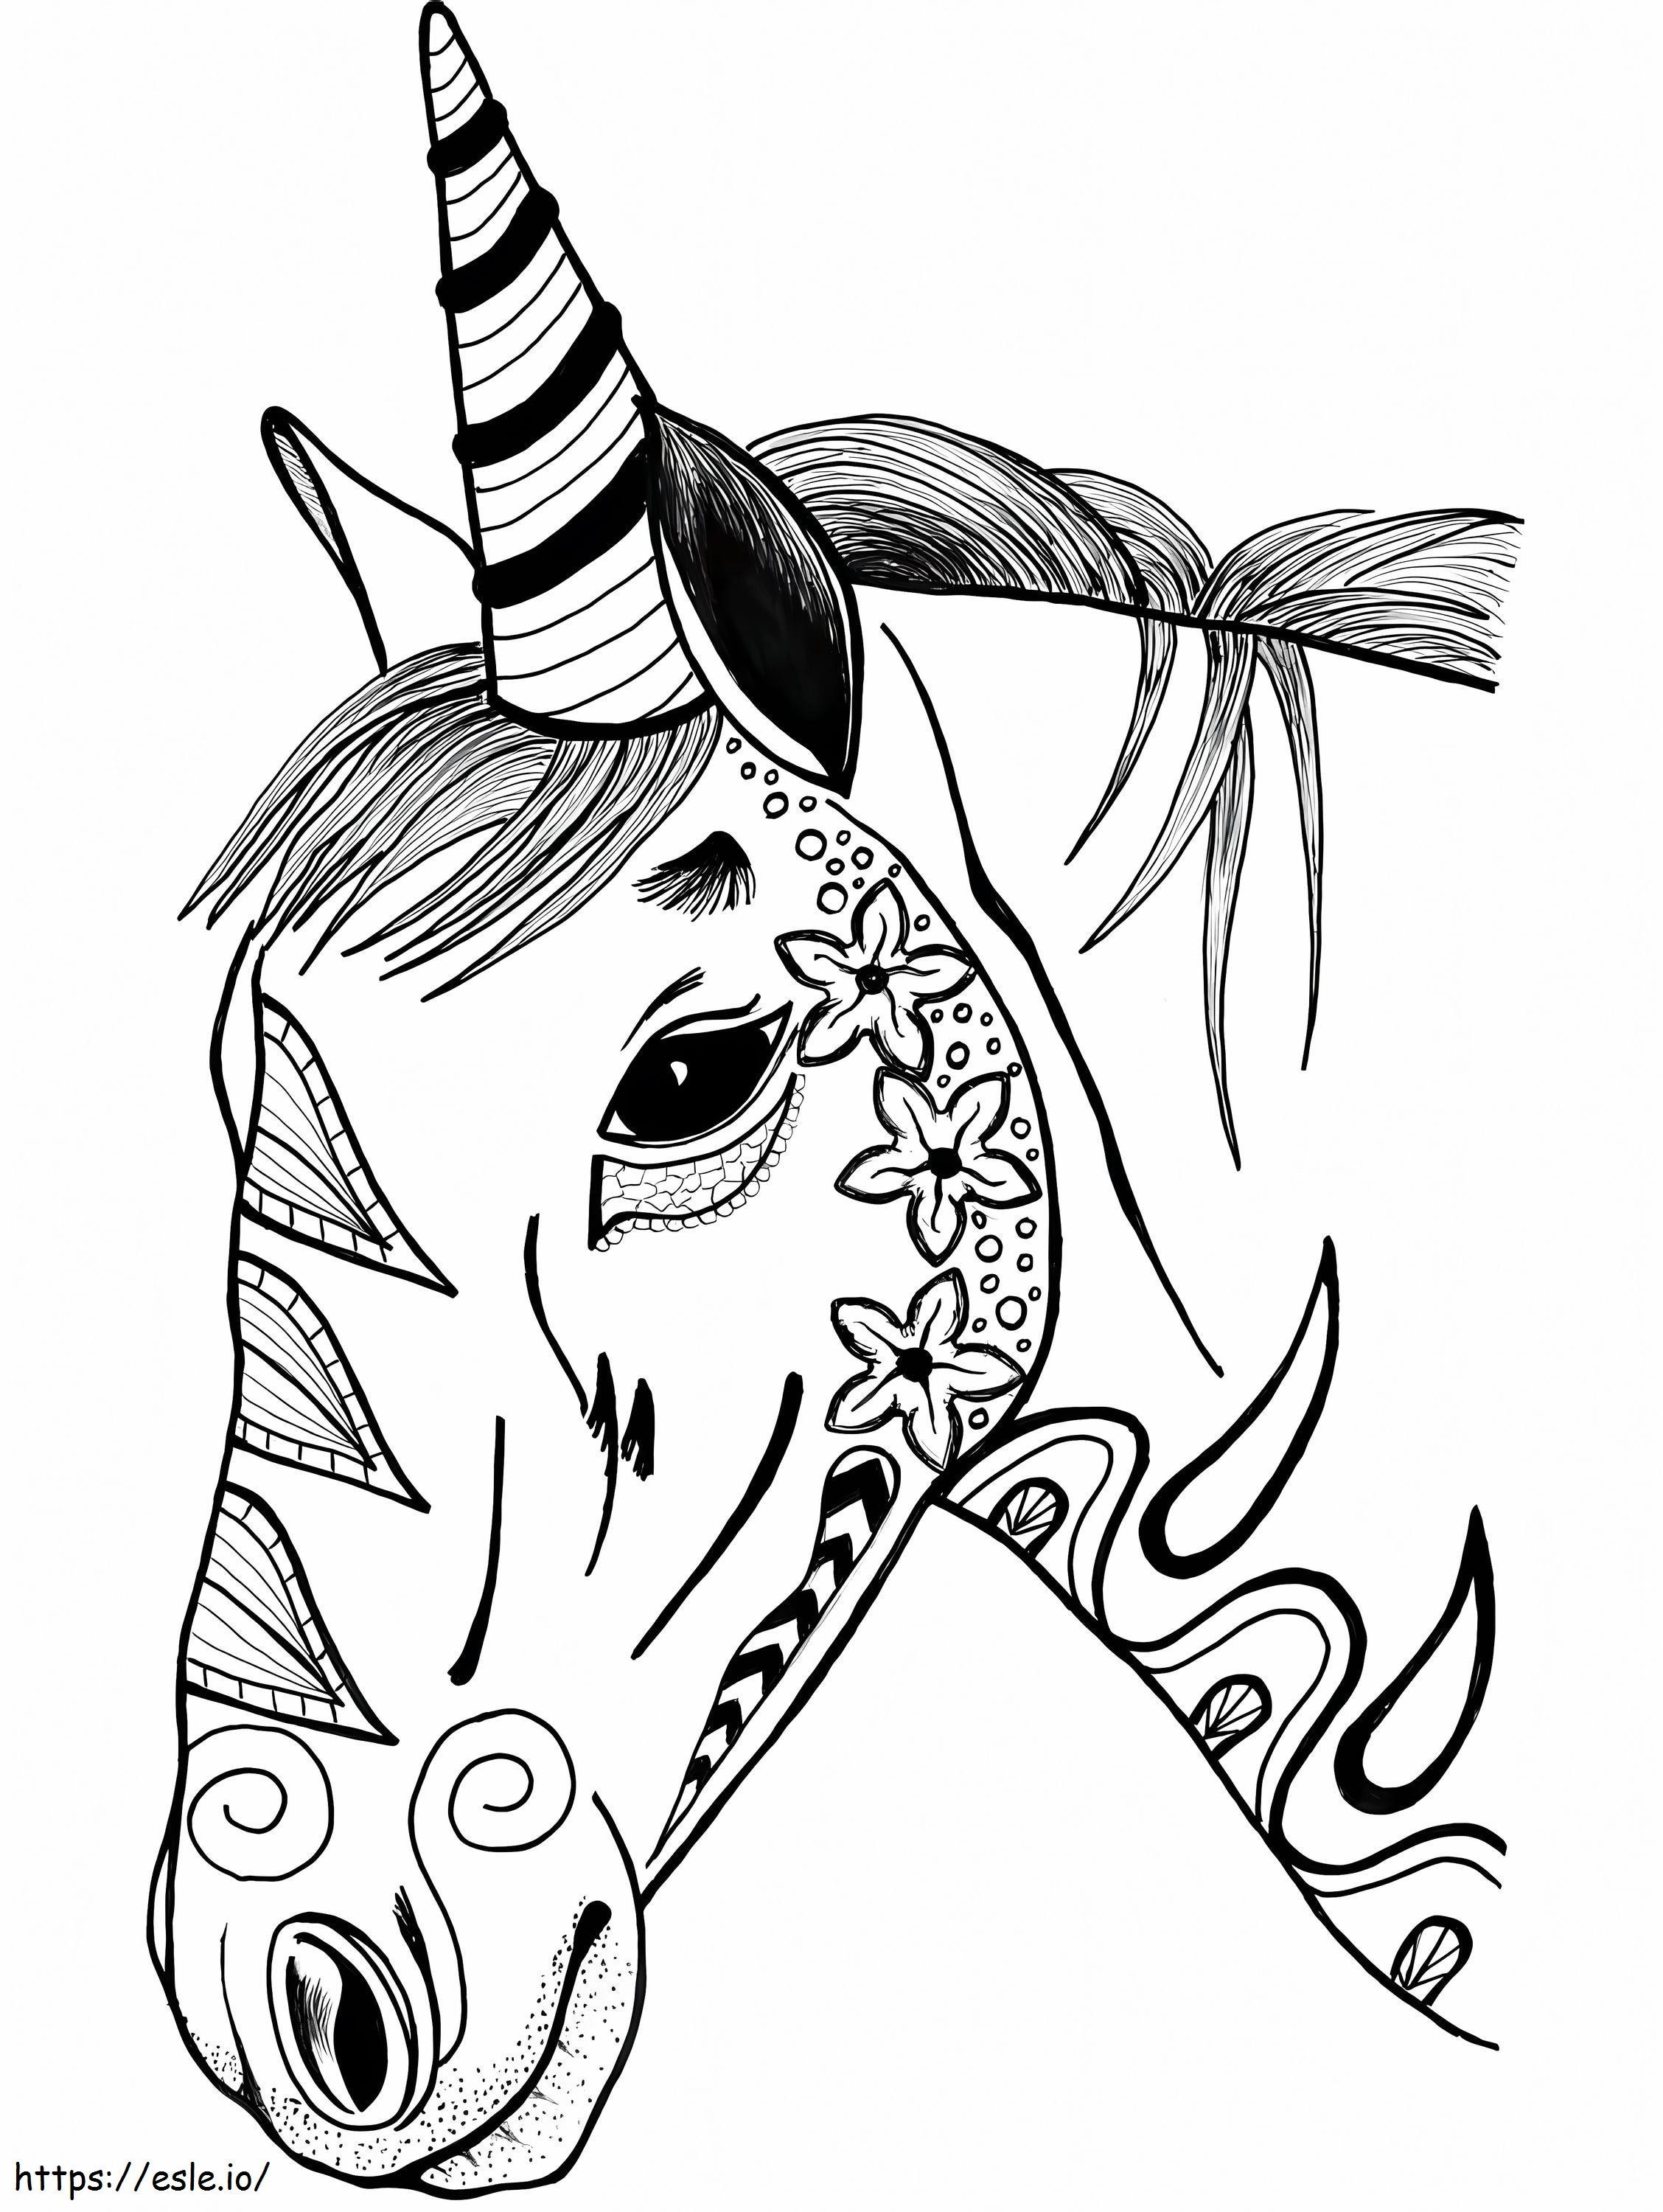 1563585707 Bonita cabeza de unicornio A4 para colorear